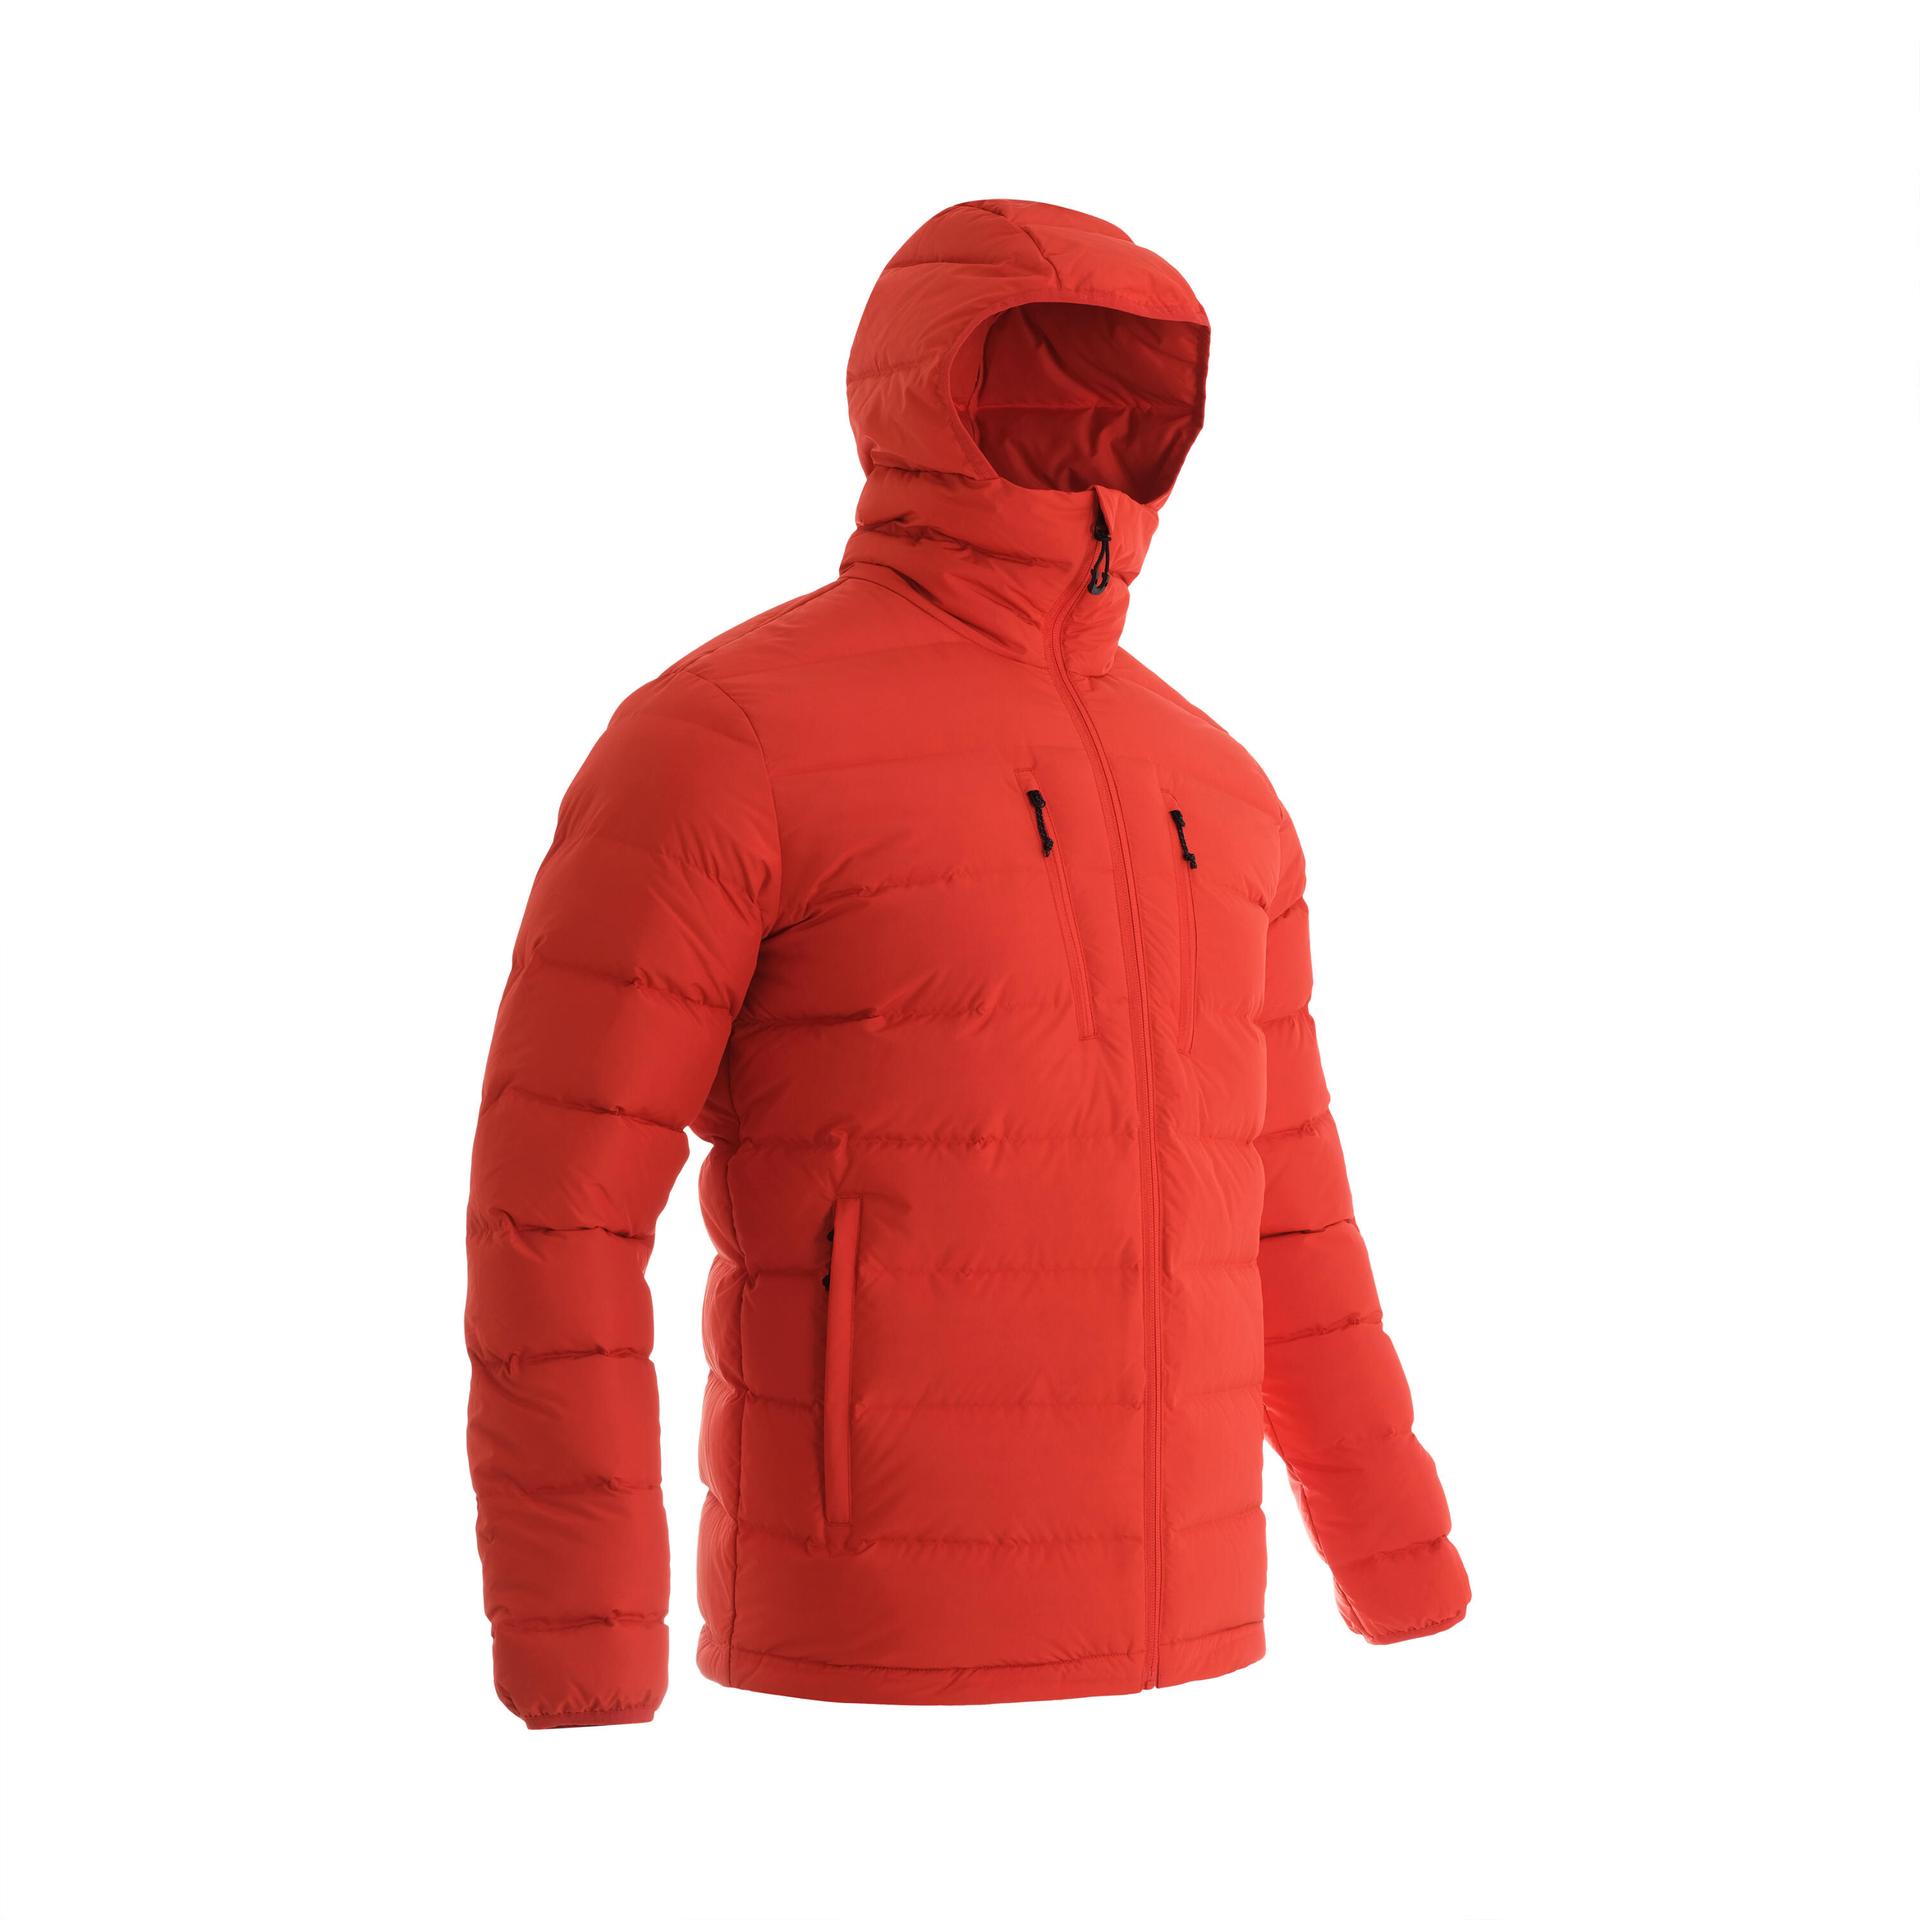 down hoodie jacket trek500 -12°c - red - man